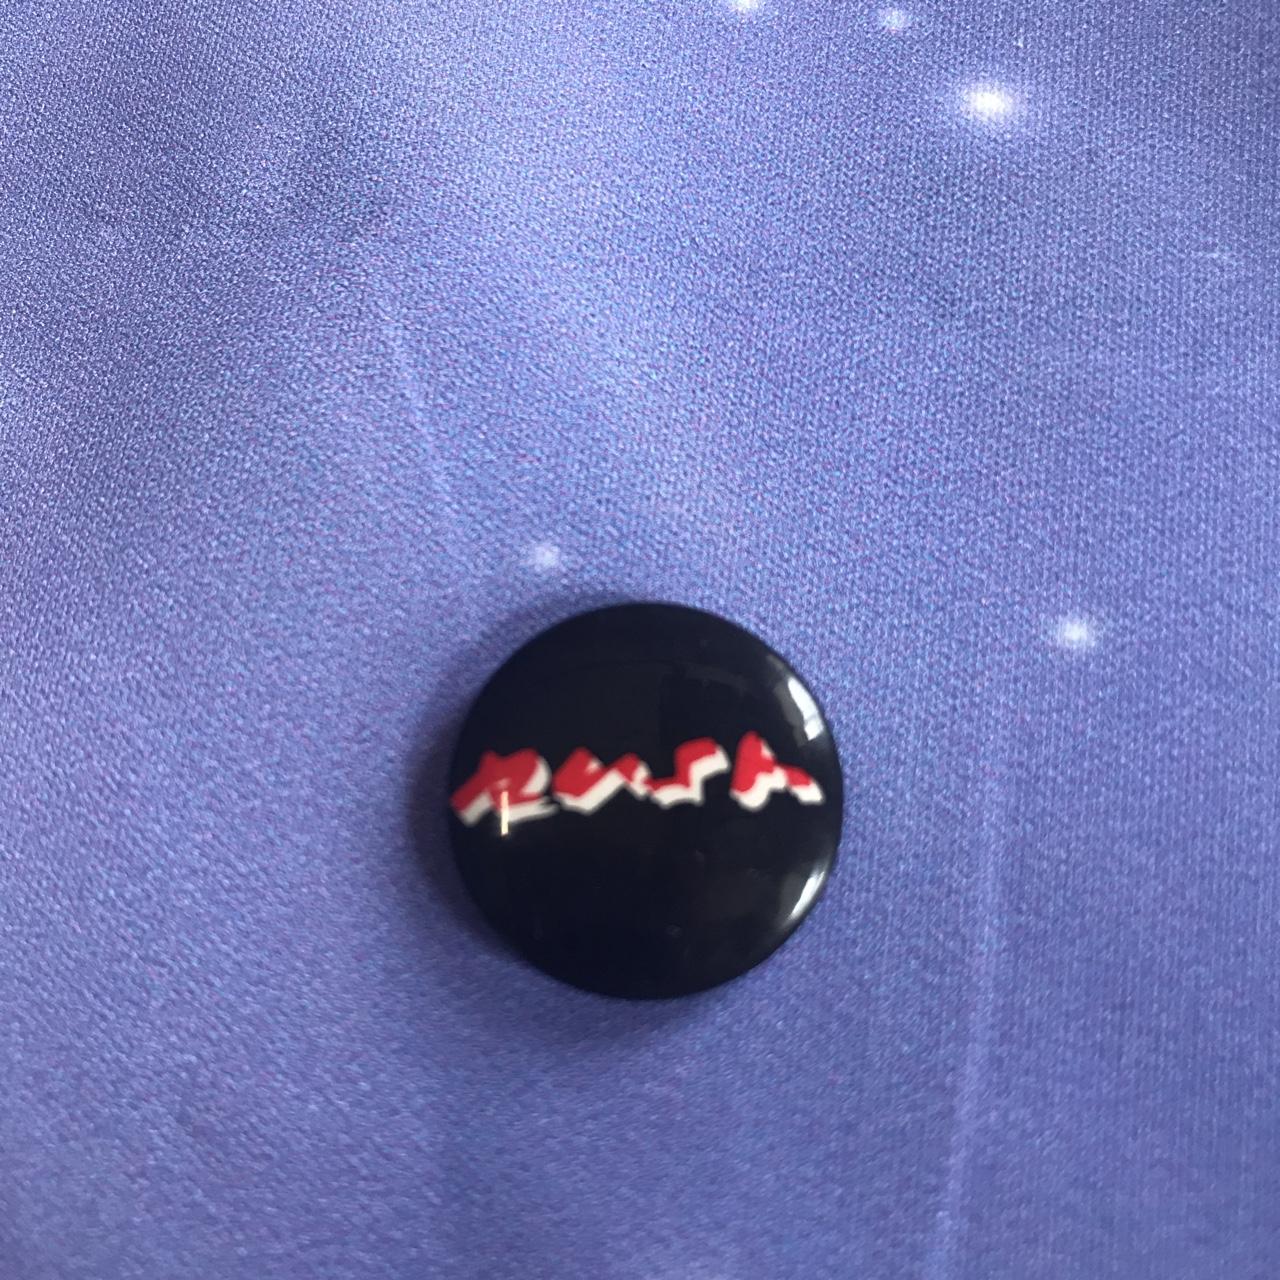 Small Black Pin 